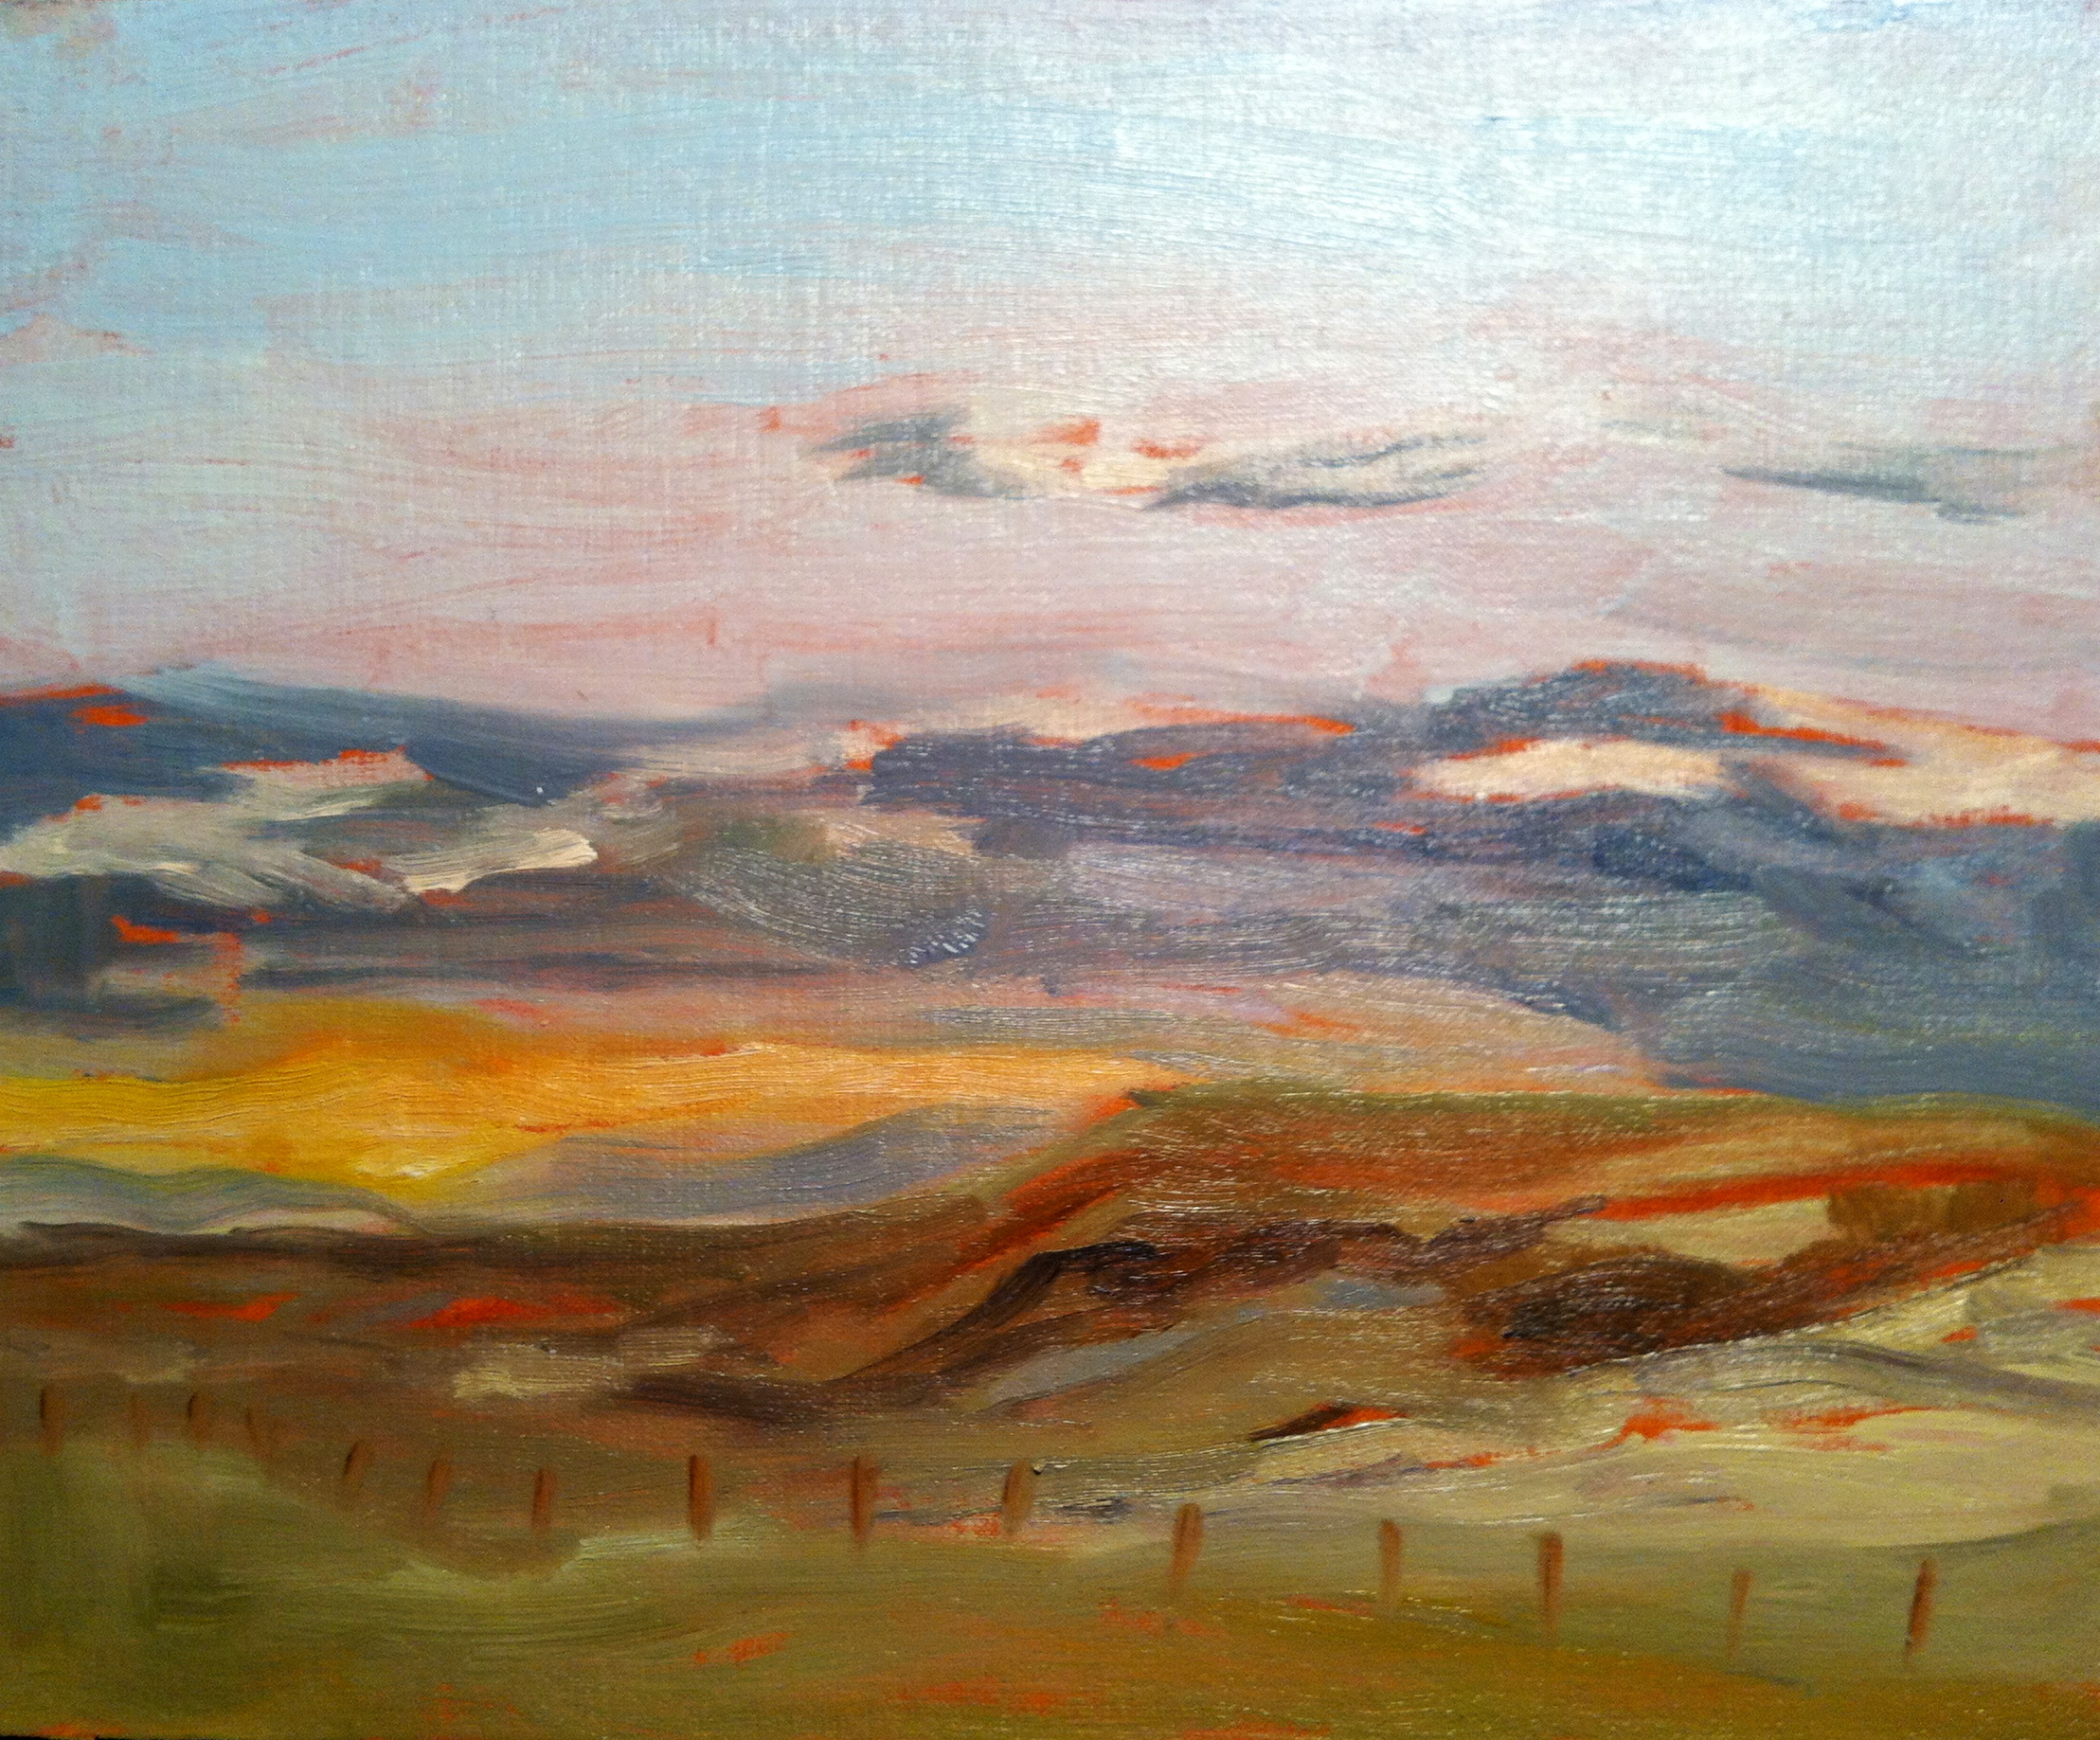 "Evening Sunset at Siksika" ©2012 Janice Tanton. Oil on linen panel. 8"x10"